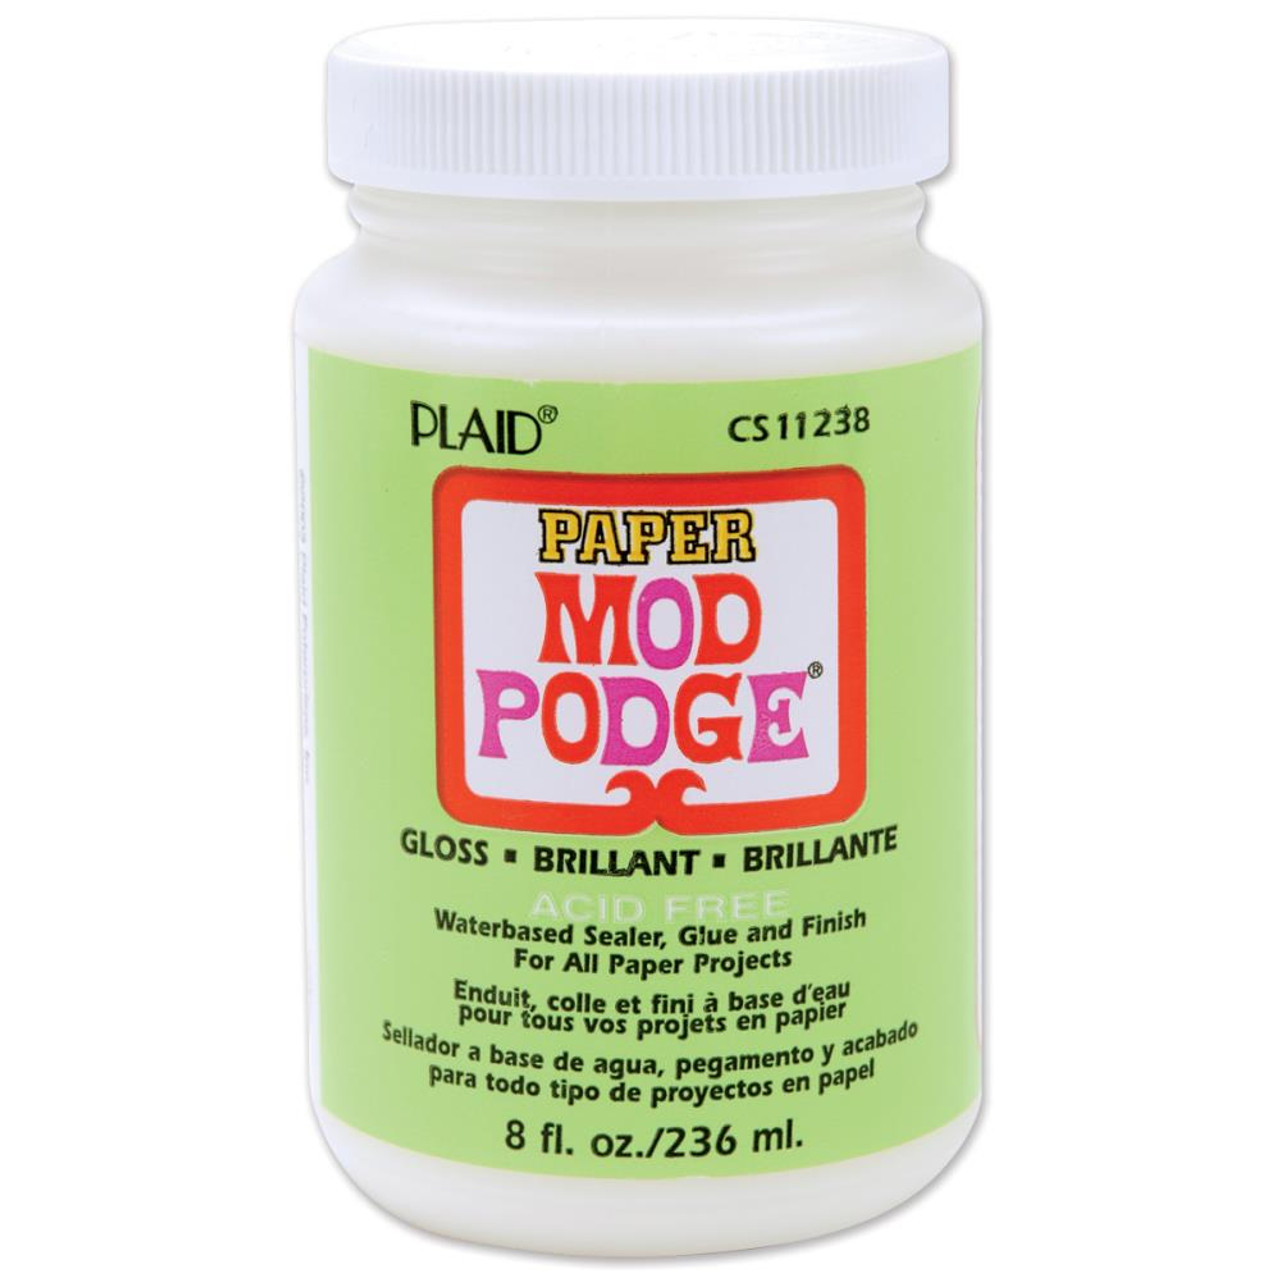 How to Mod Podge, Plaid